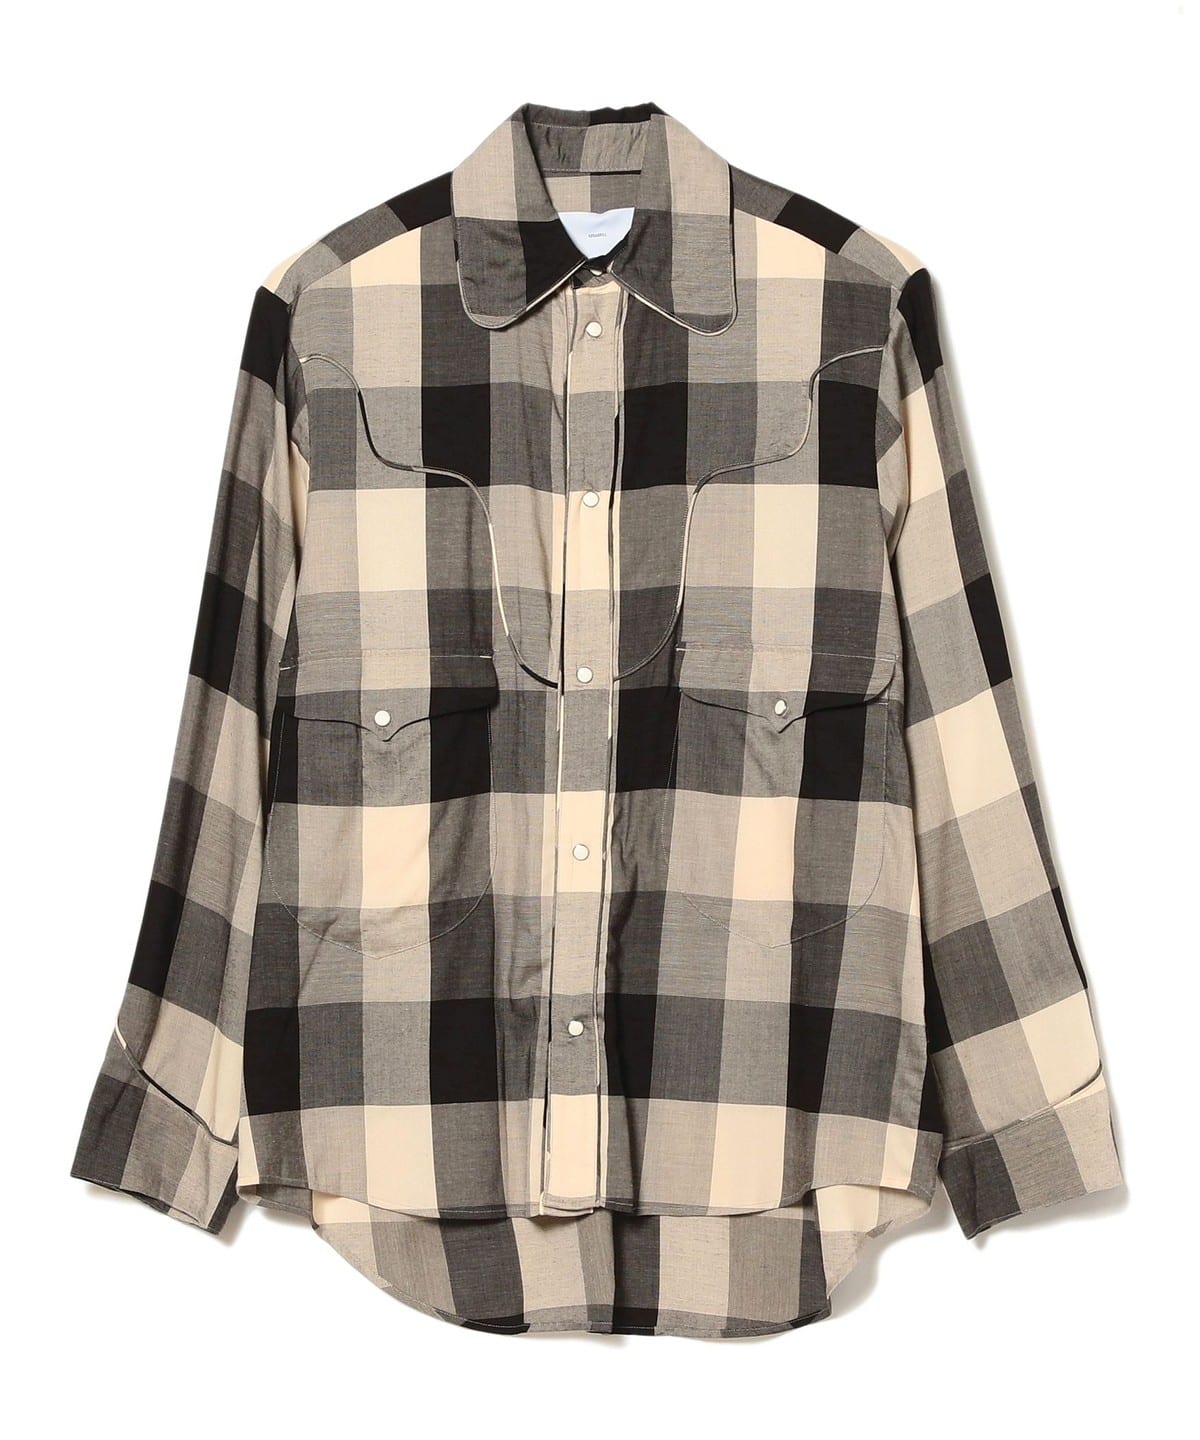 超ポイント祭?期間限定】 dairiku beams Flannel Check Shirt aid